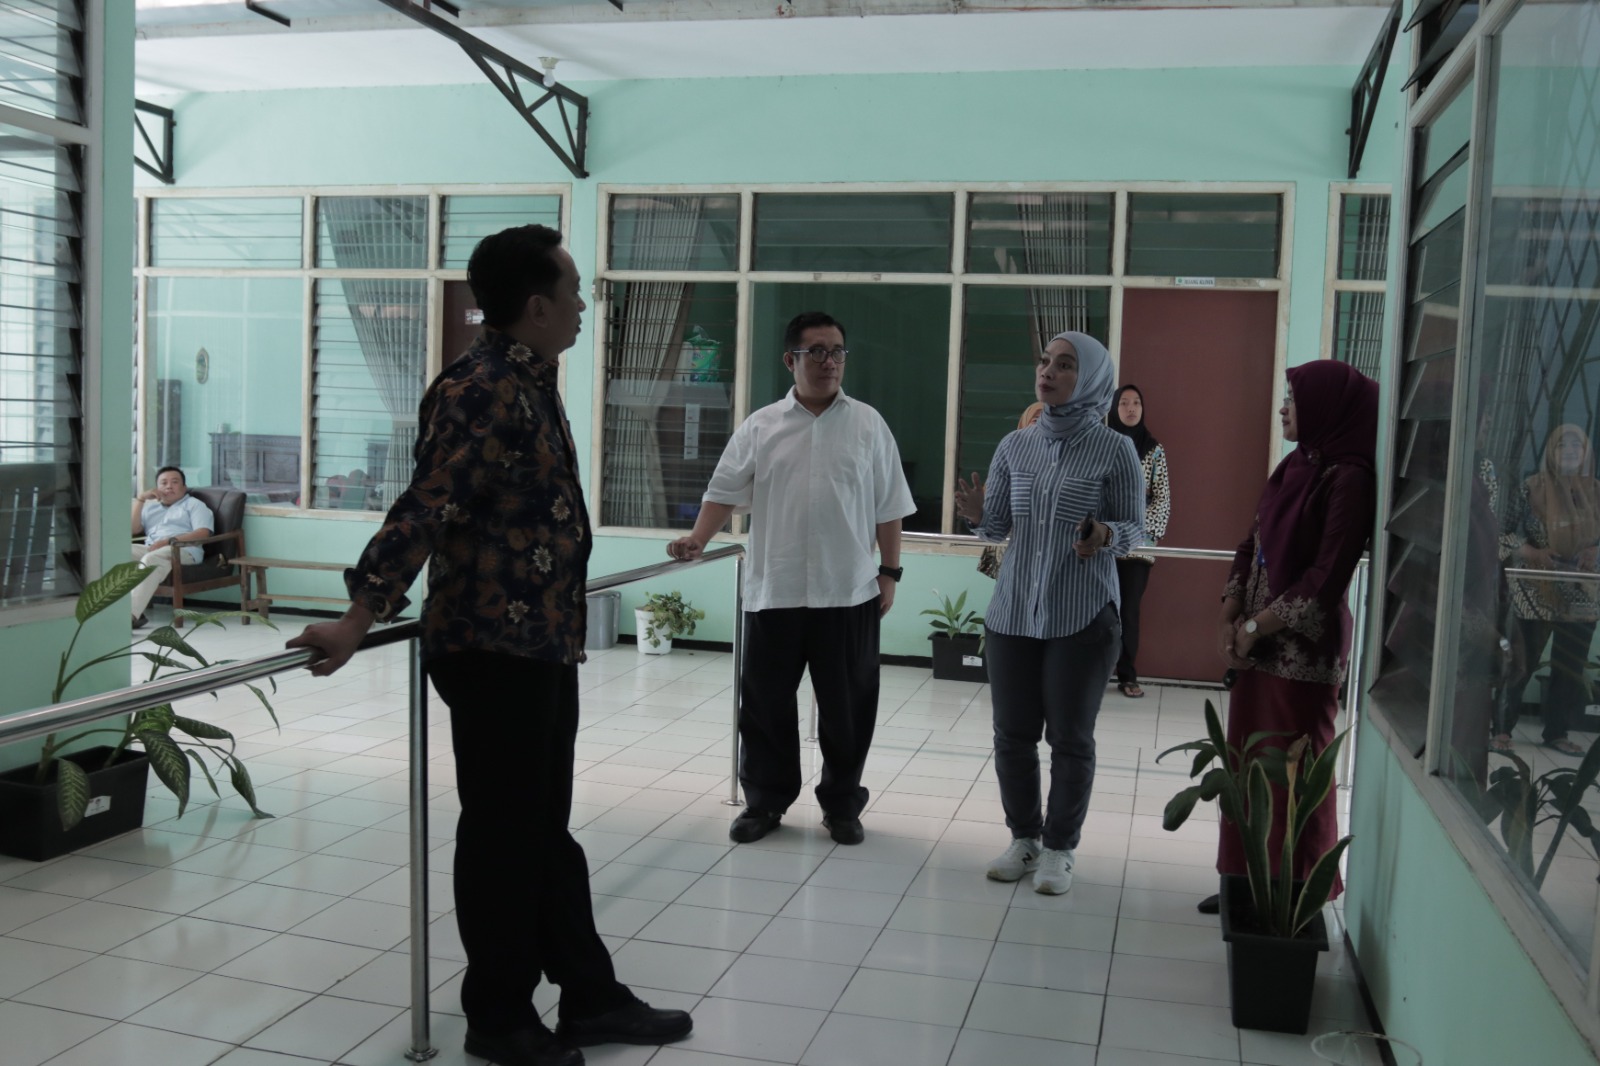 Polresta Malang Kota Bersama Pemkot Bangun "Rumah Aman" untuk Korban Kekerasan dan Pelecehan.